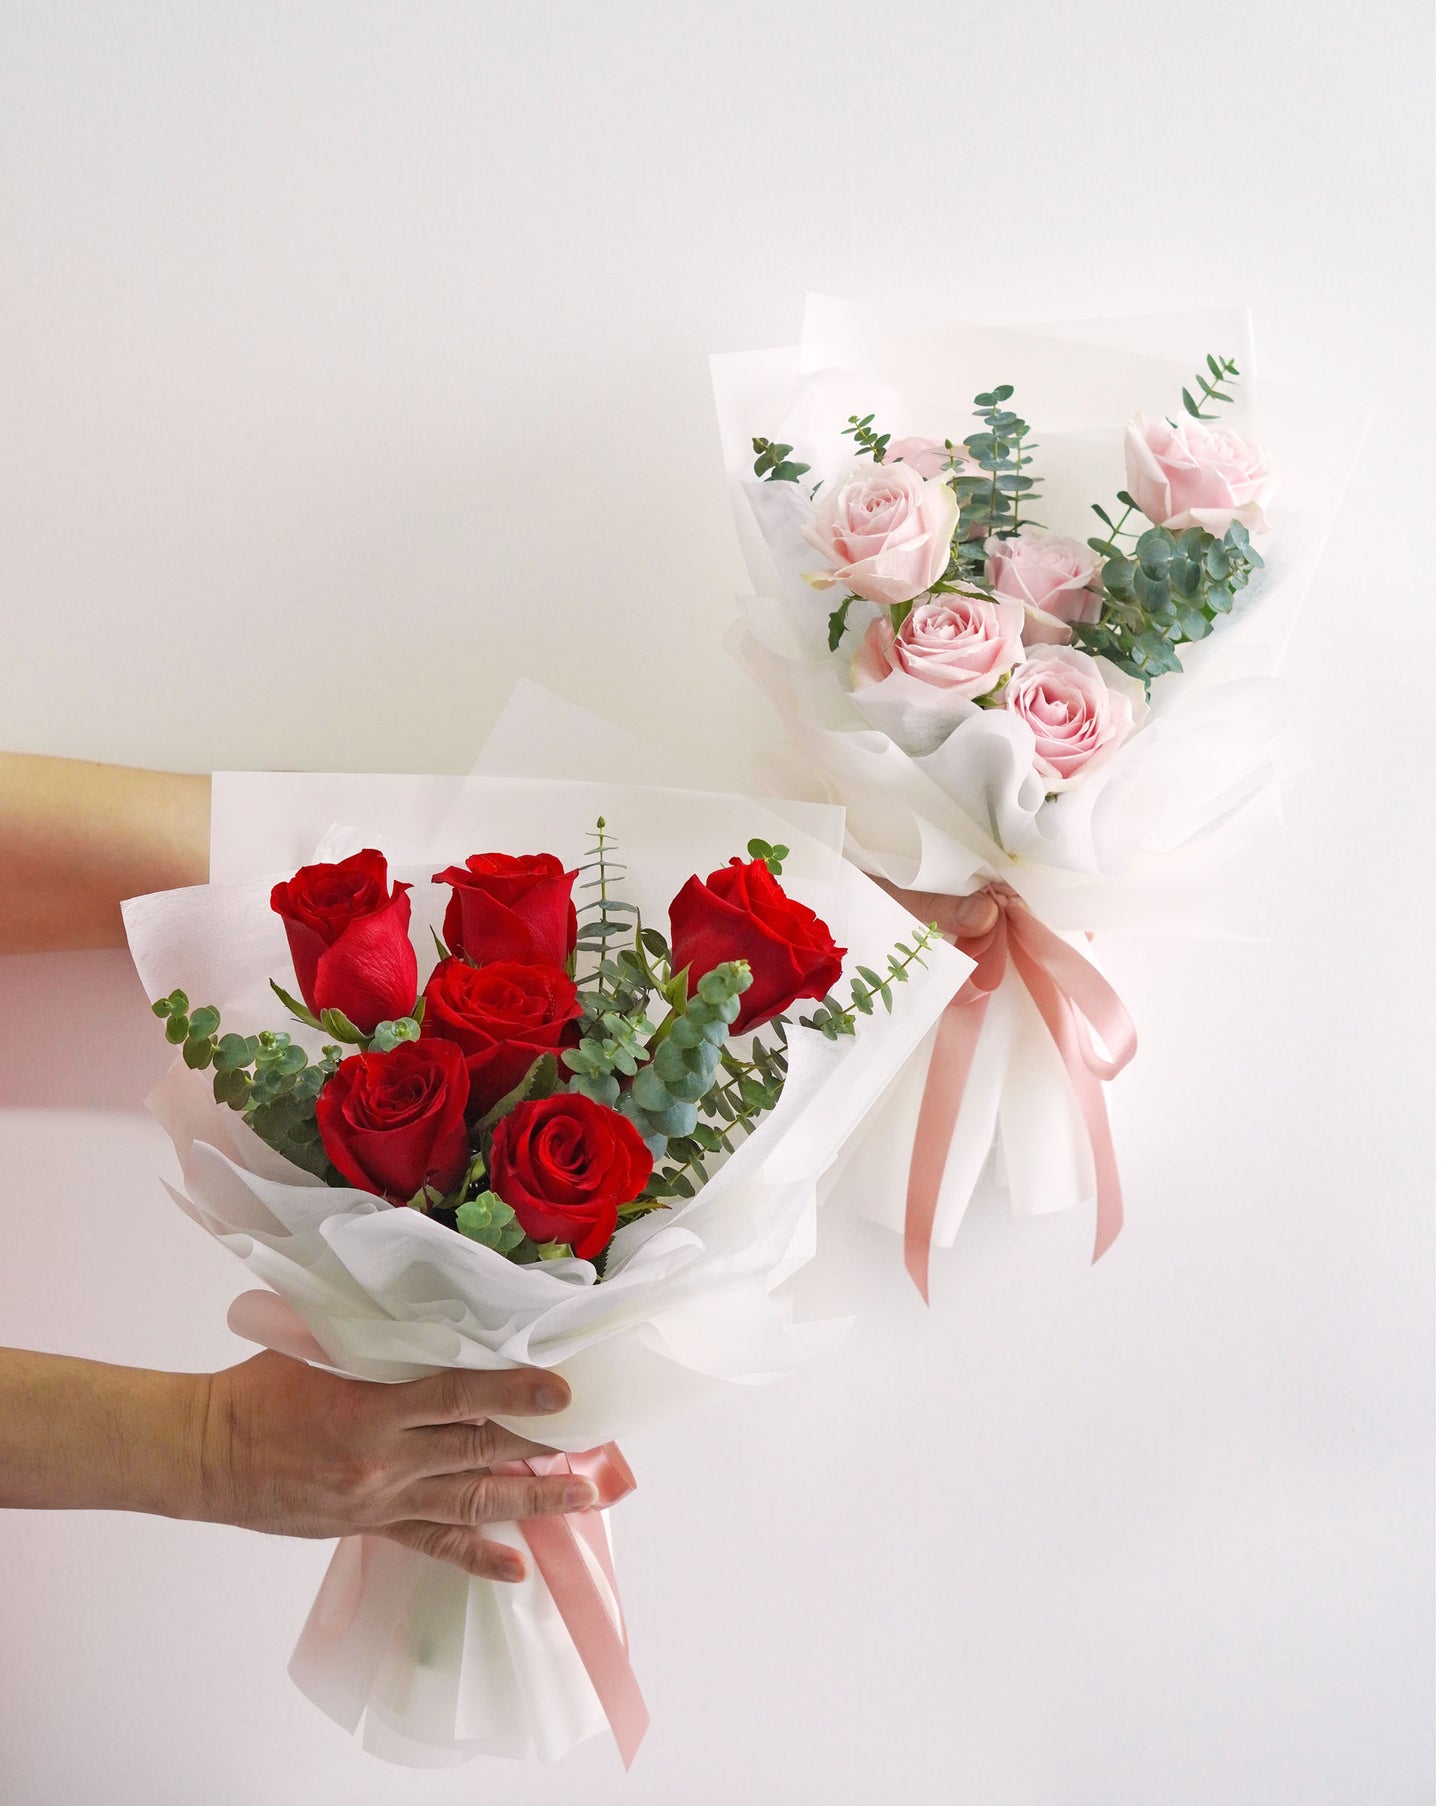 Rose Flower Bouquet - Let Me Love You